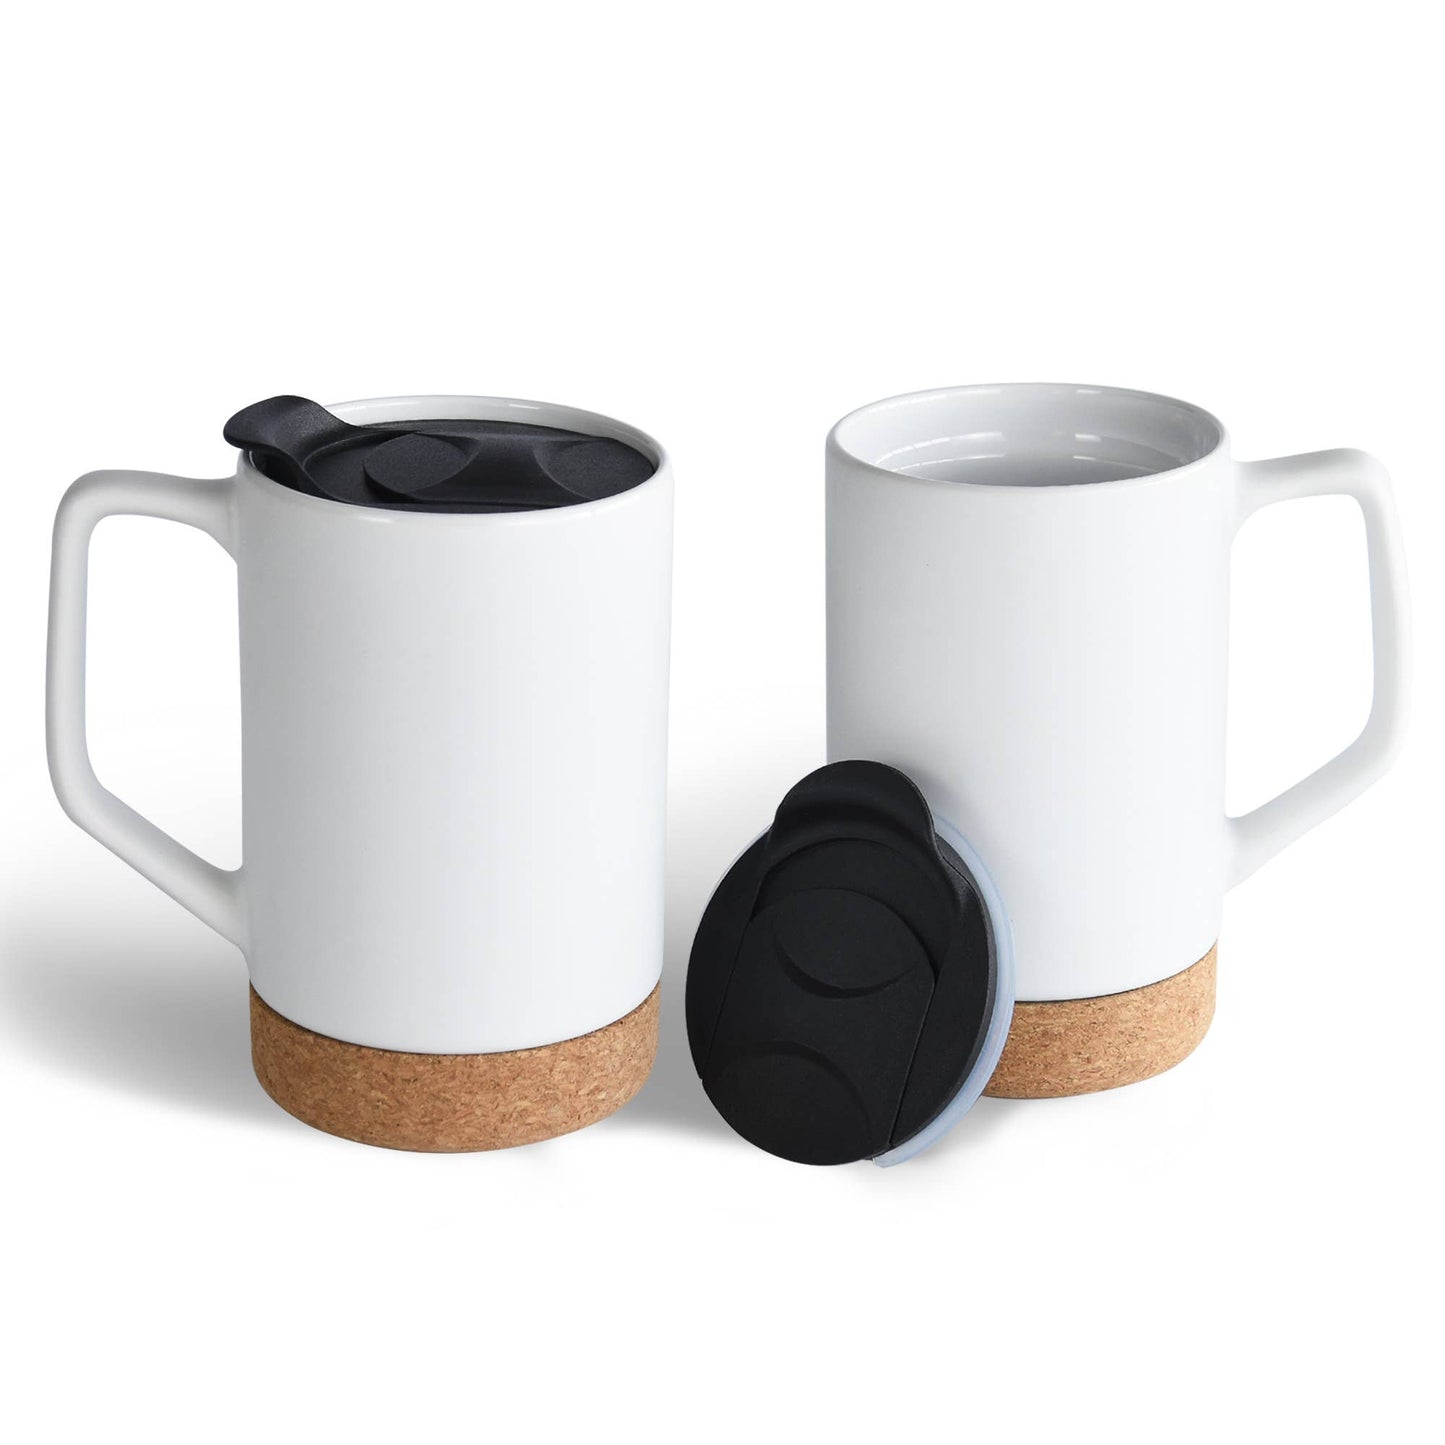 Tea or Coffee Mug with Lid and Removeable Cork Base